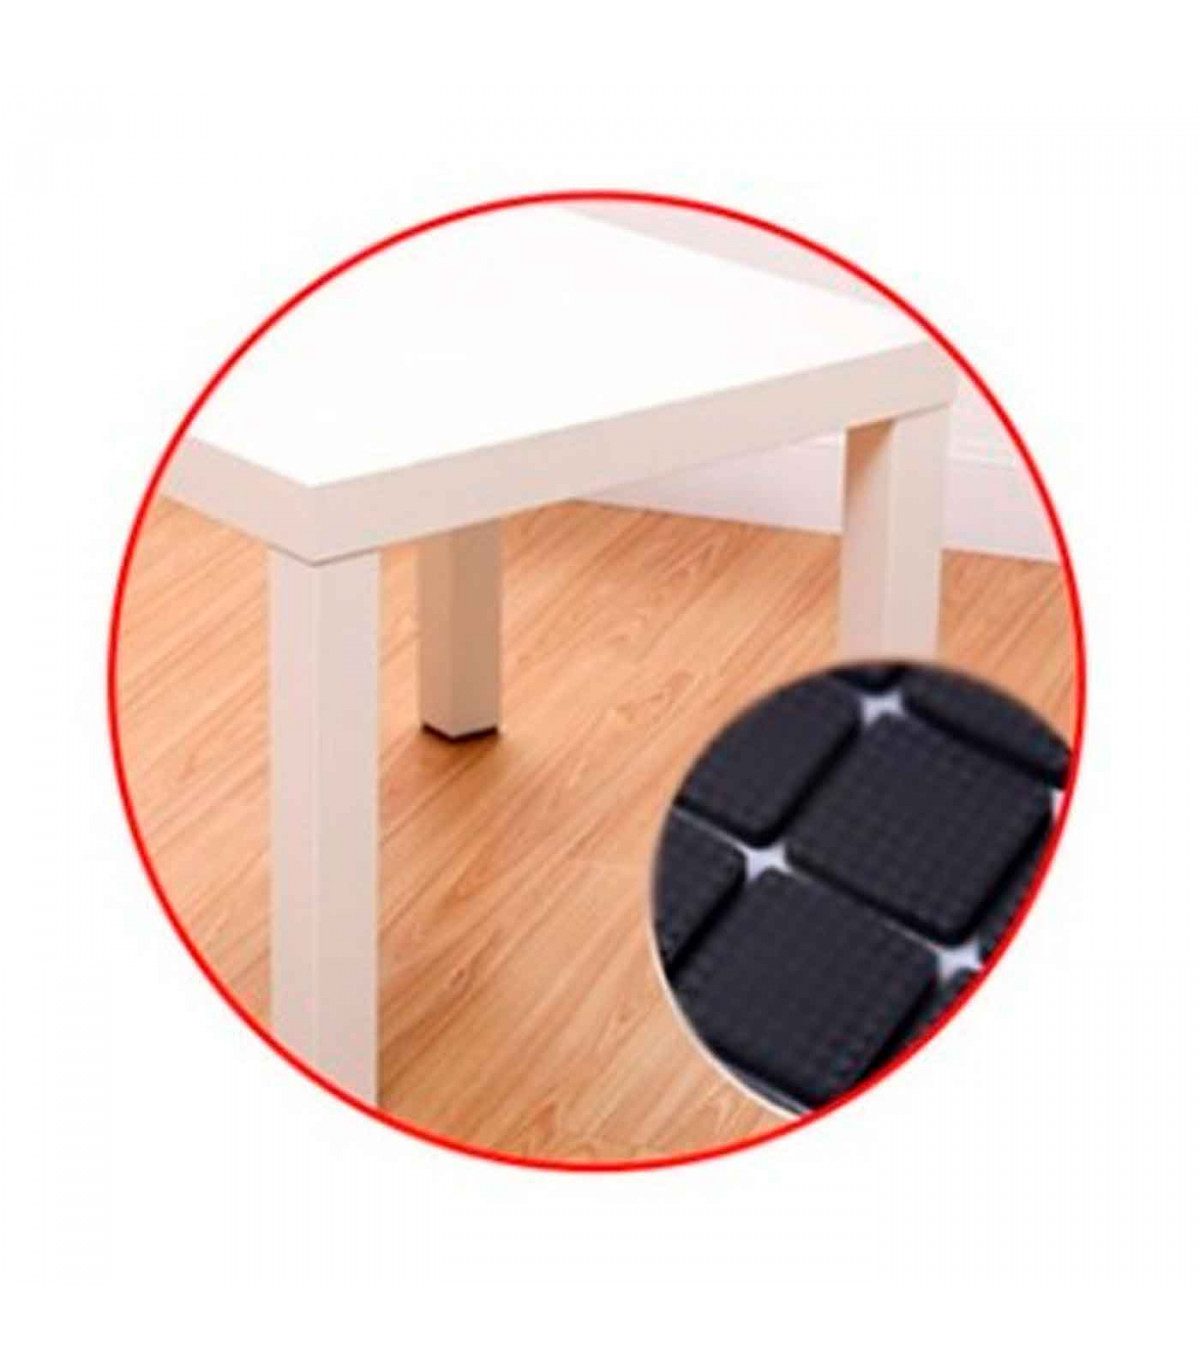 Protectores cuadrados para patas de sillas, mesas o muebles. 8